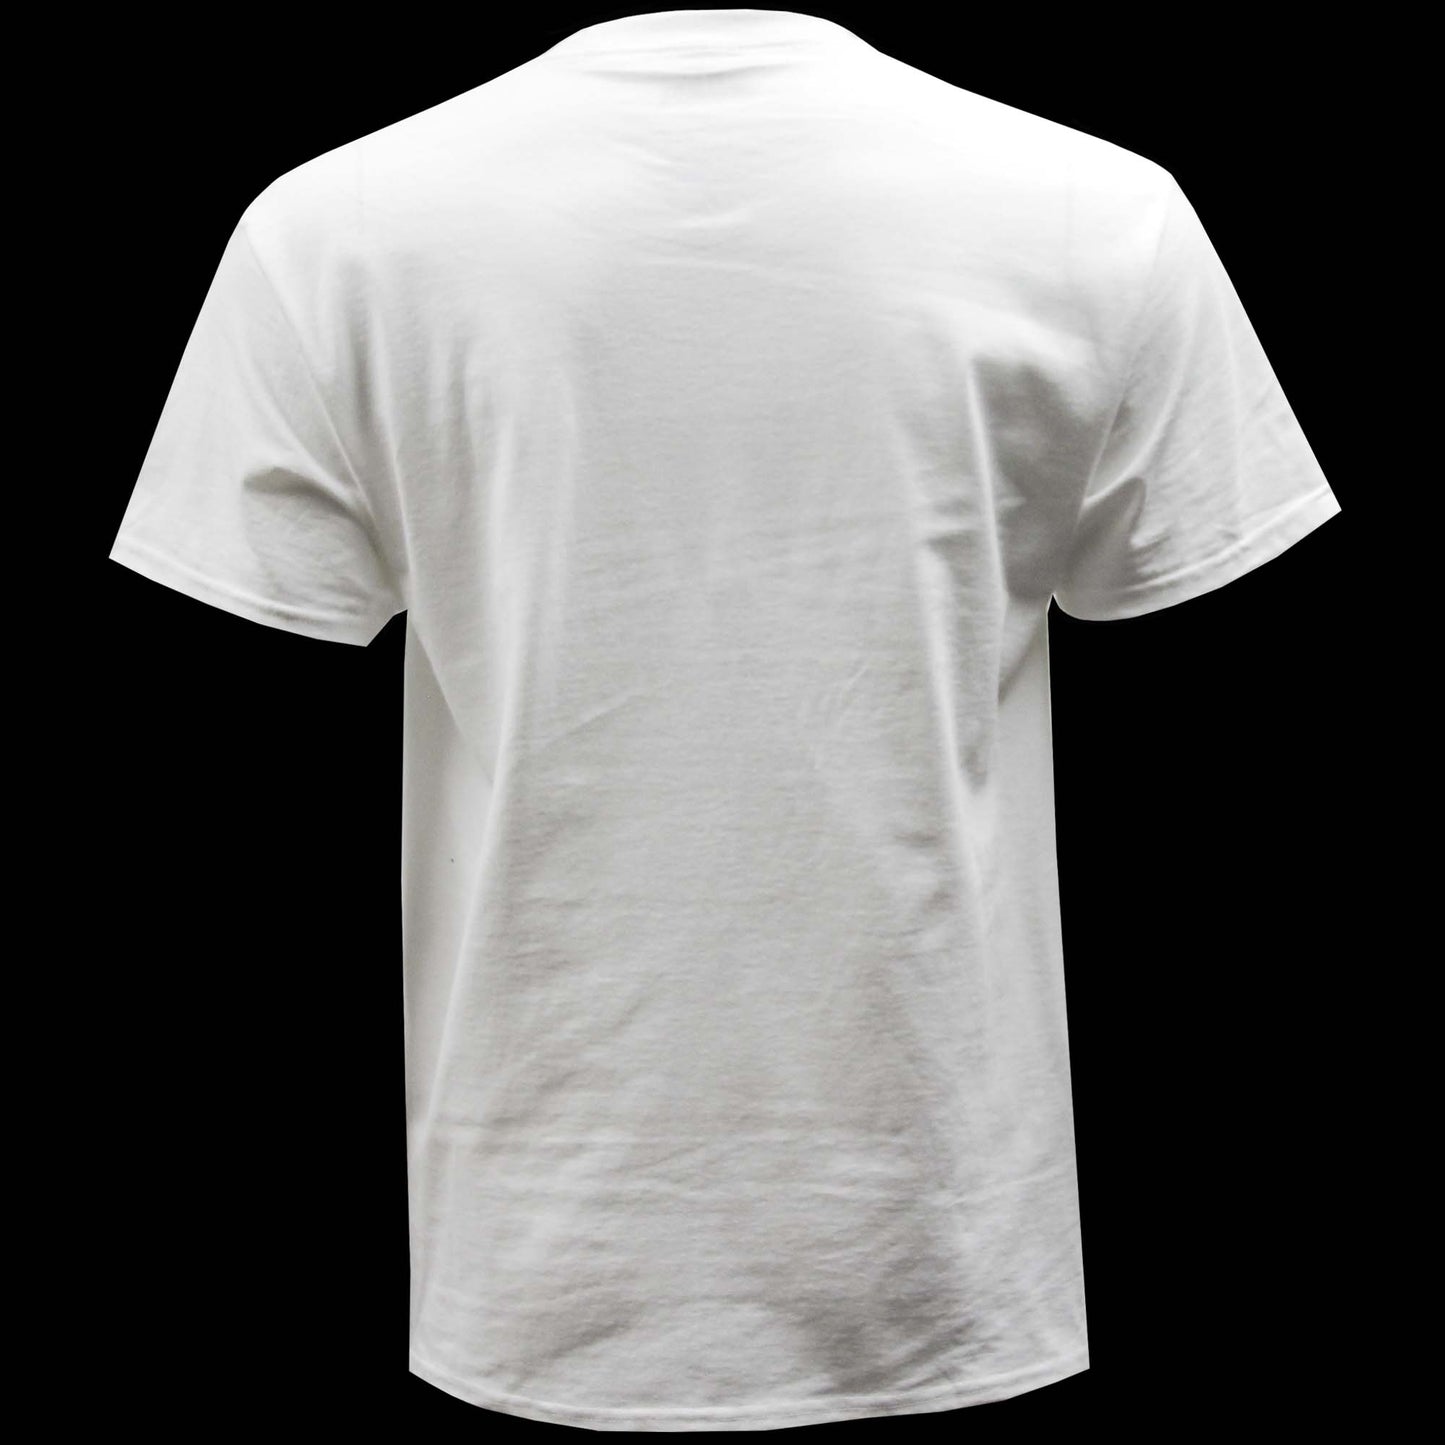 Gold & Silver Pawn Shop Round Neck Basic Short Sleeve T-Shirt Nine